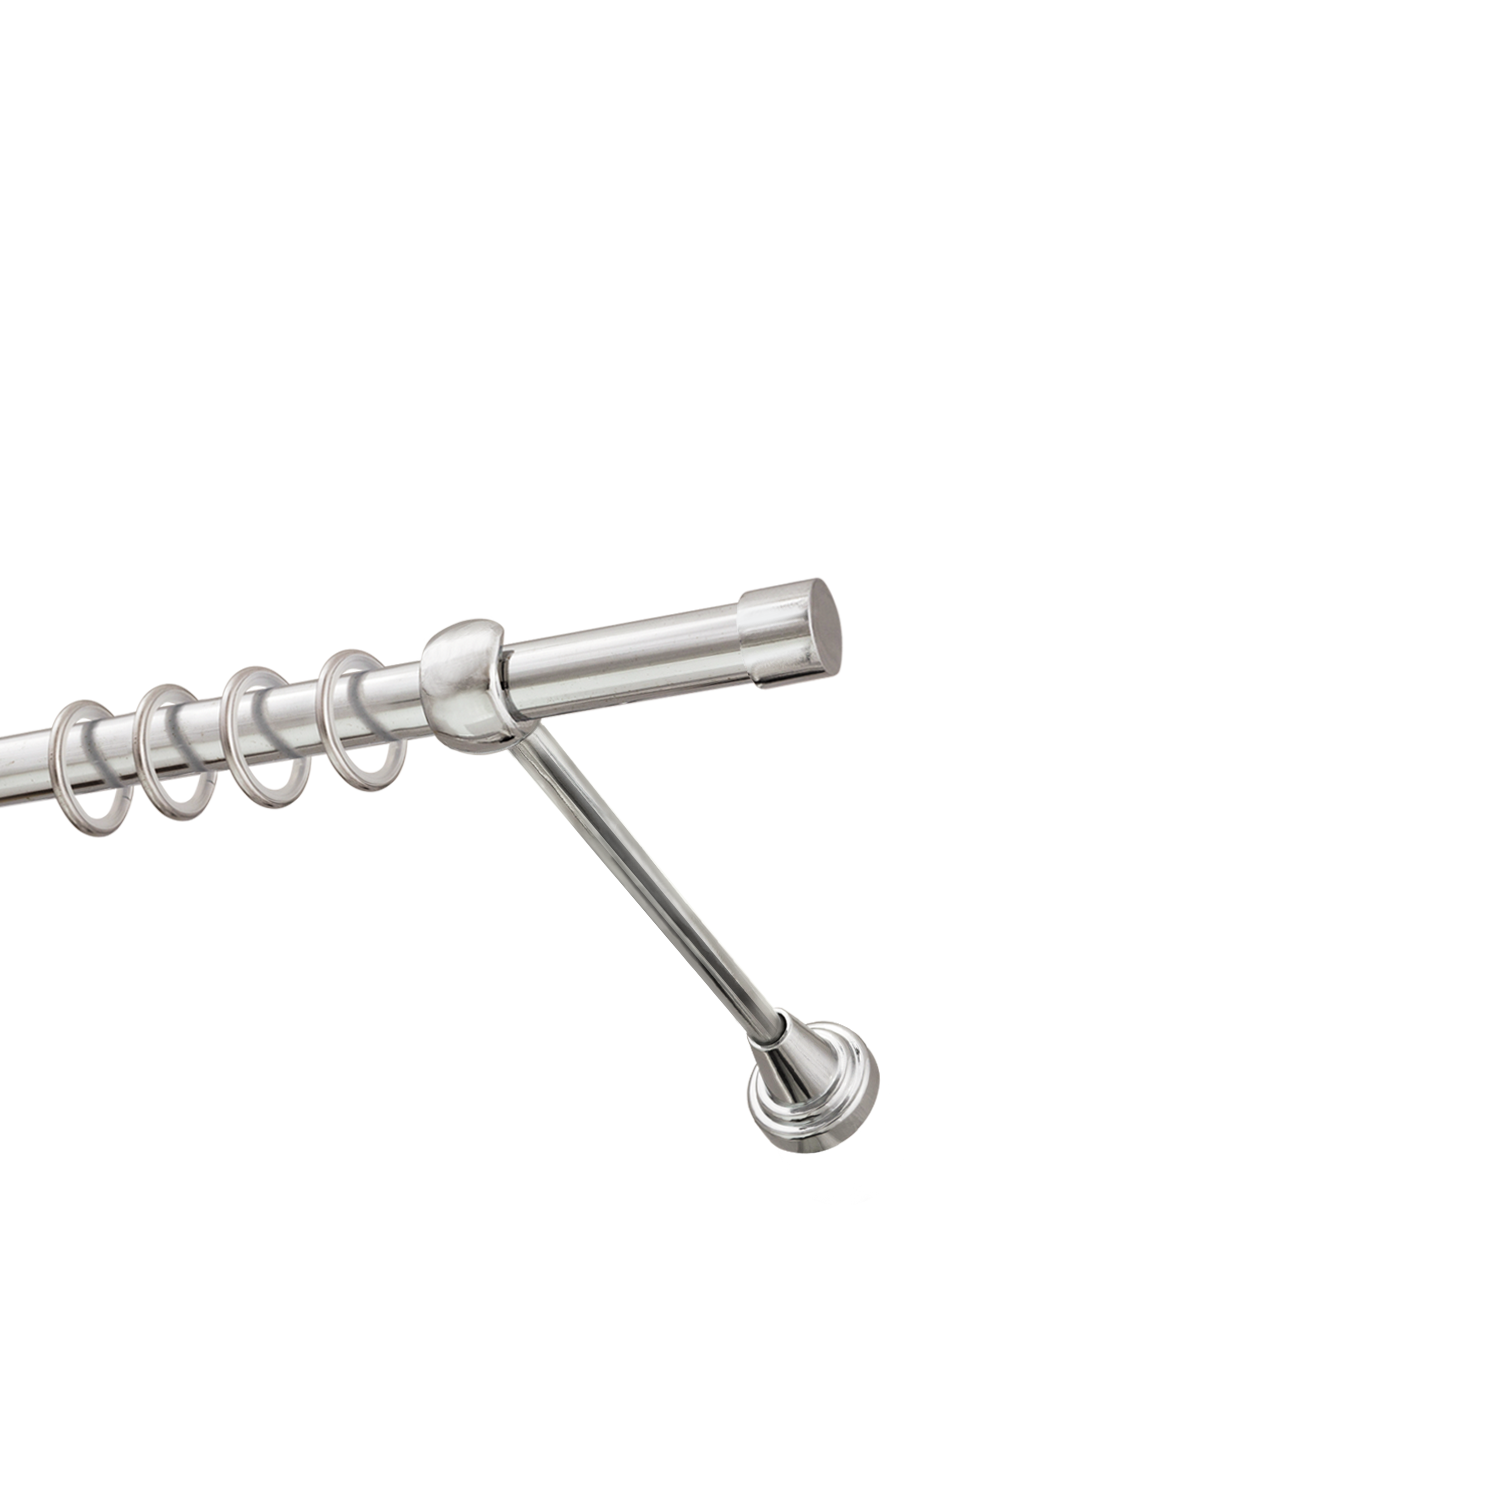 Металлический карниз для штор Заглушка, однорядный 16 мм, серебро, гладкая штанга, длина 200 см - фото Wikidecor.ru